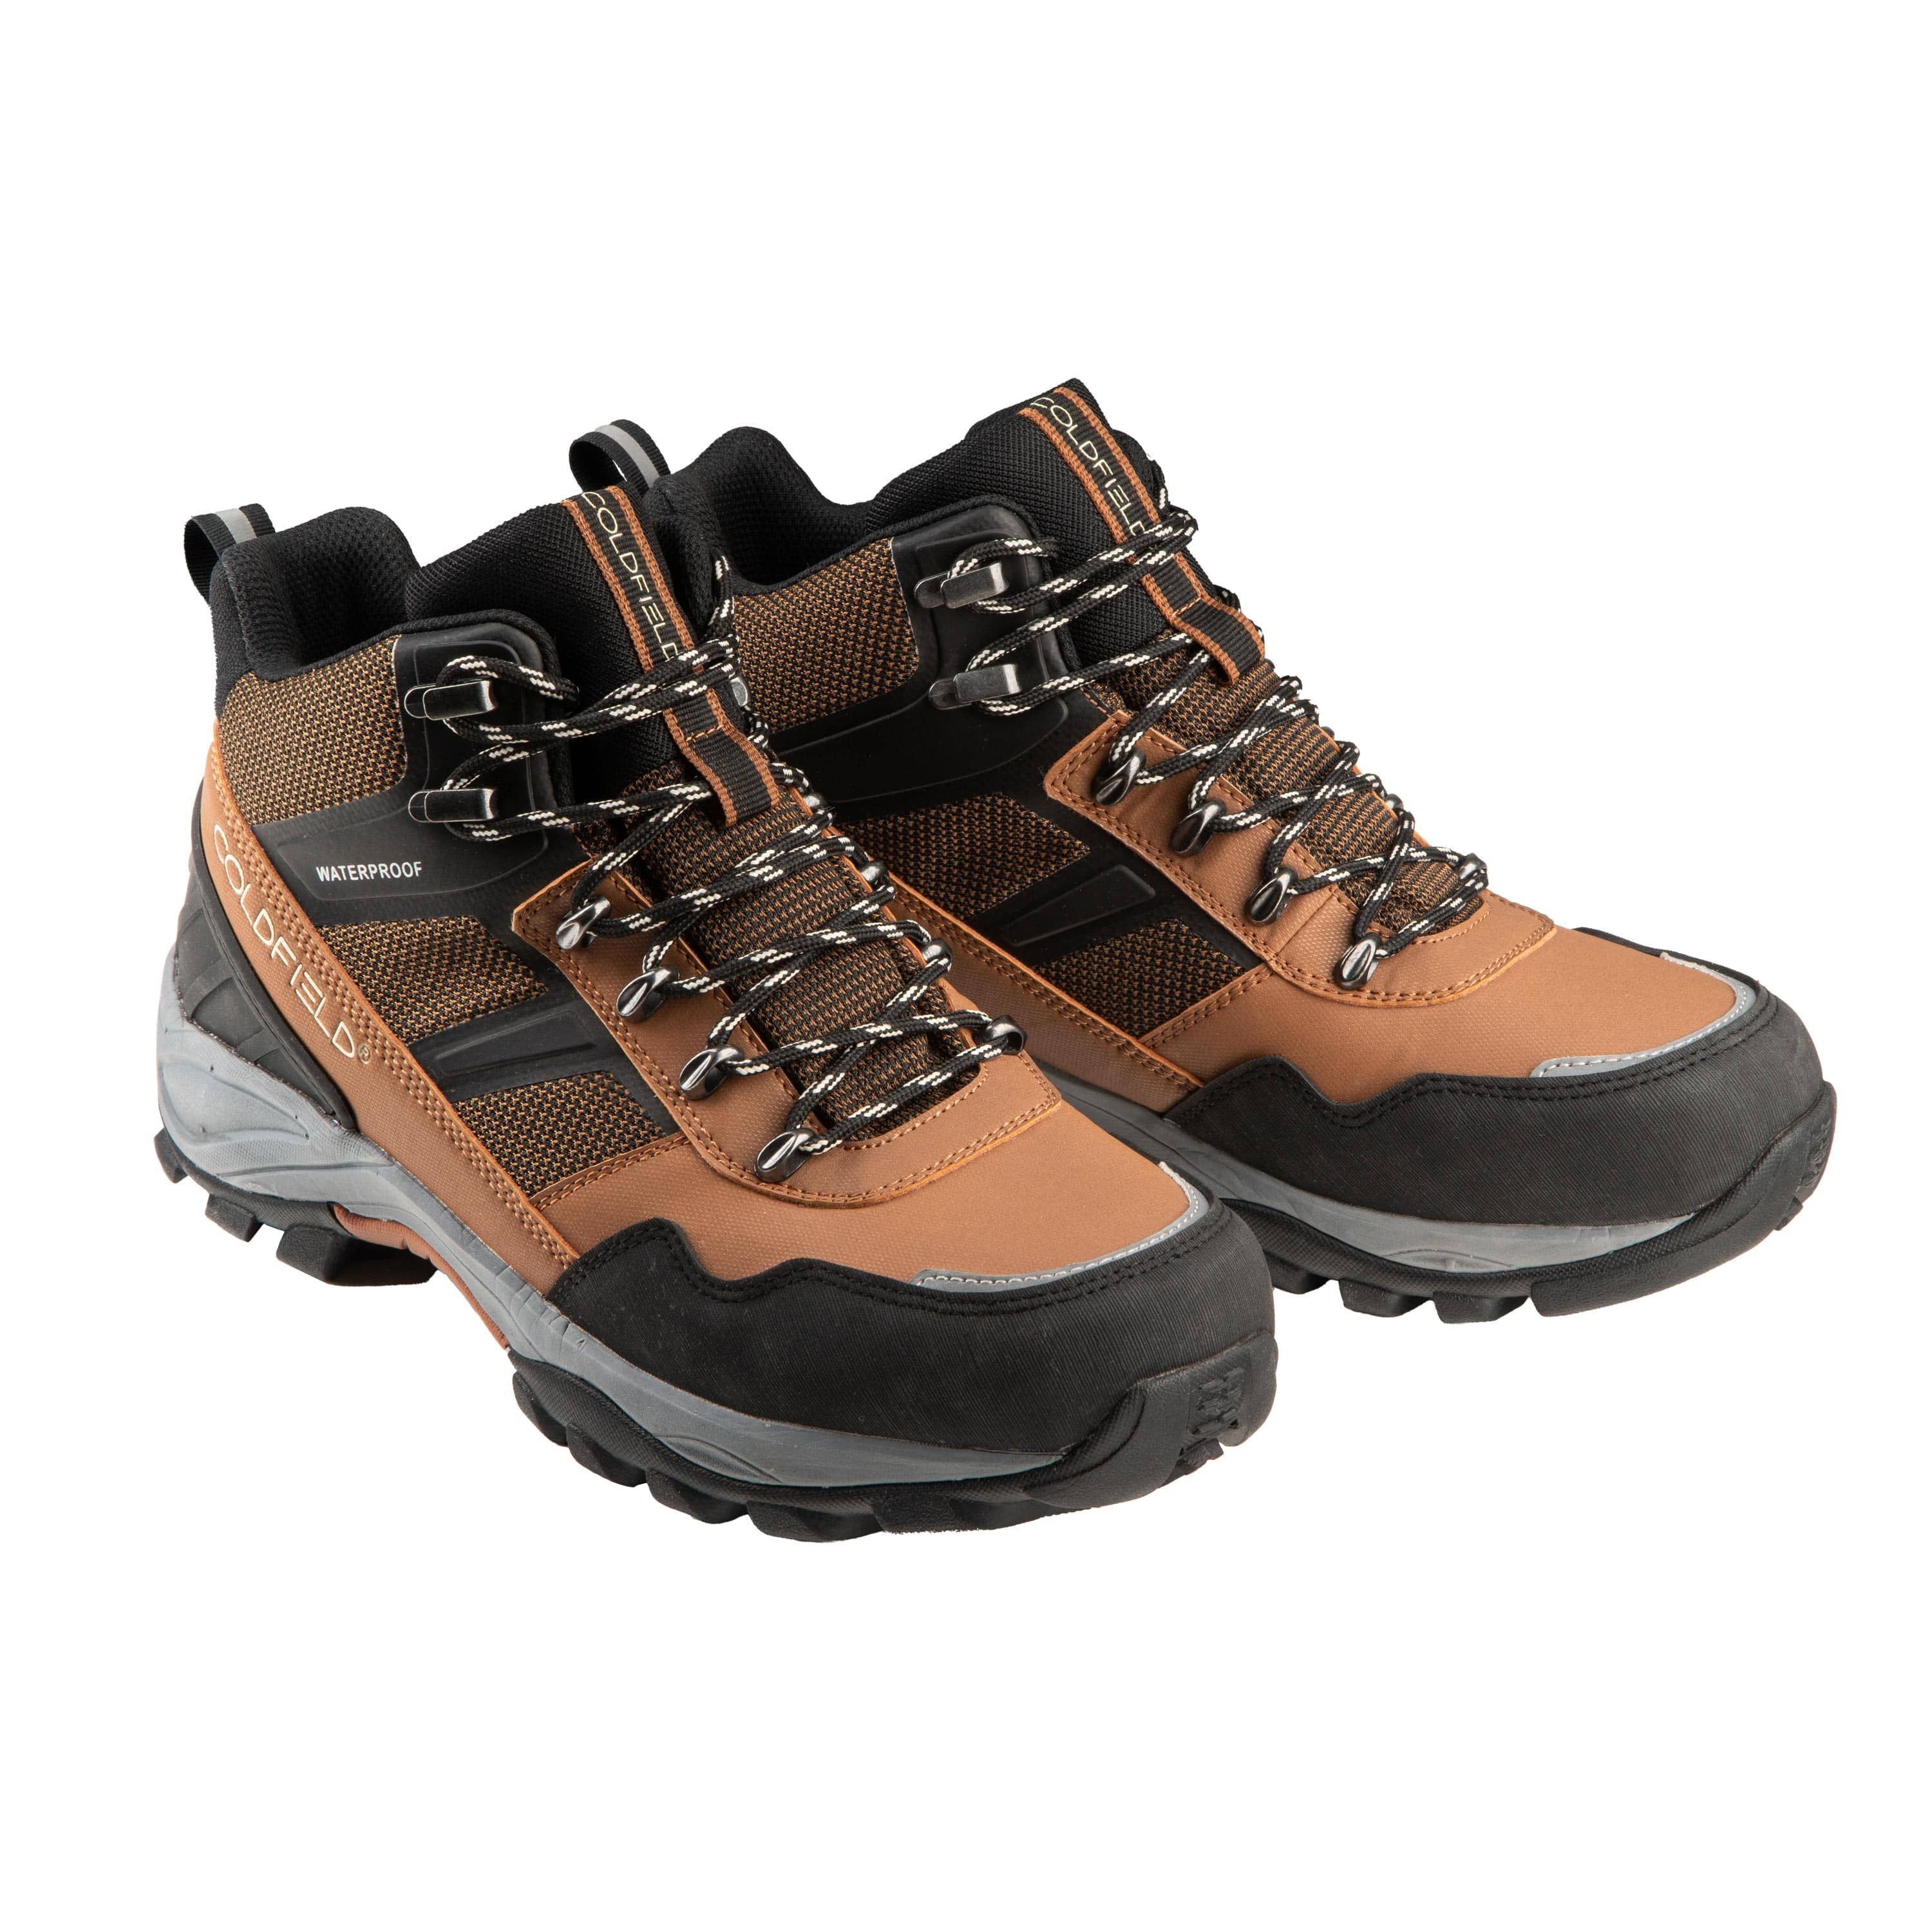 "Sierra" Hiking boots - Men’s